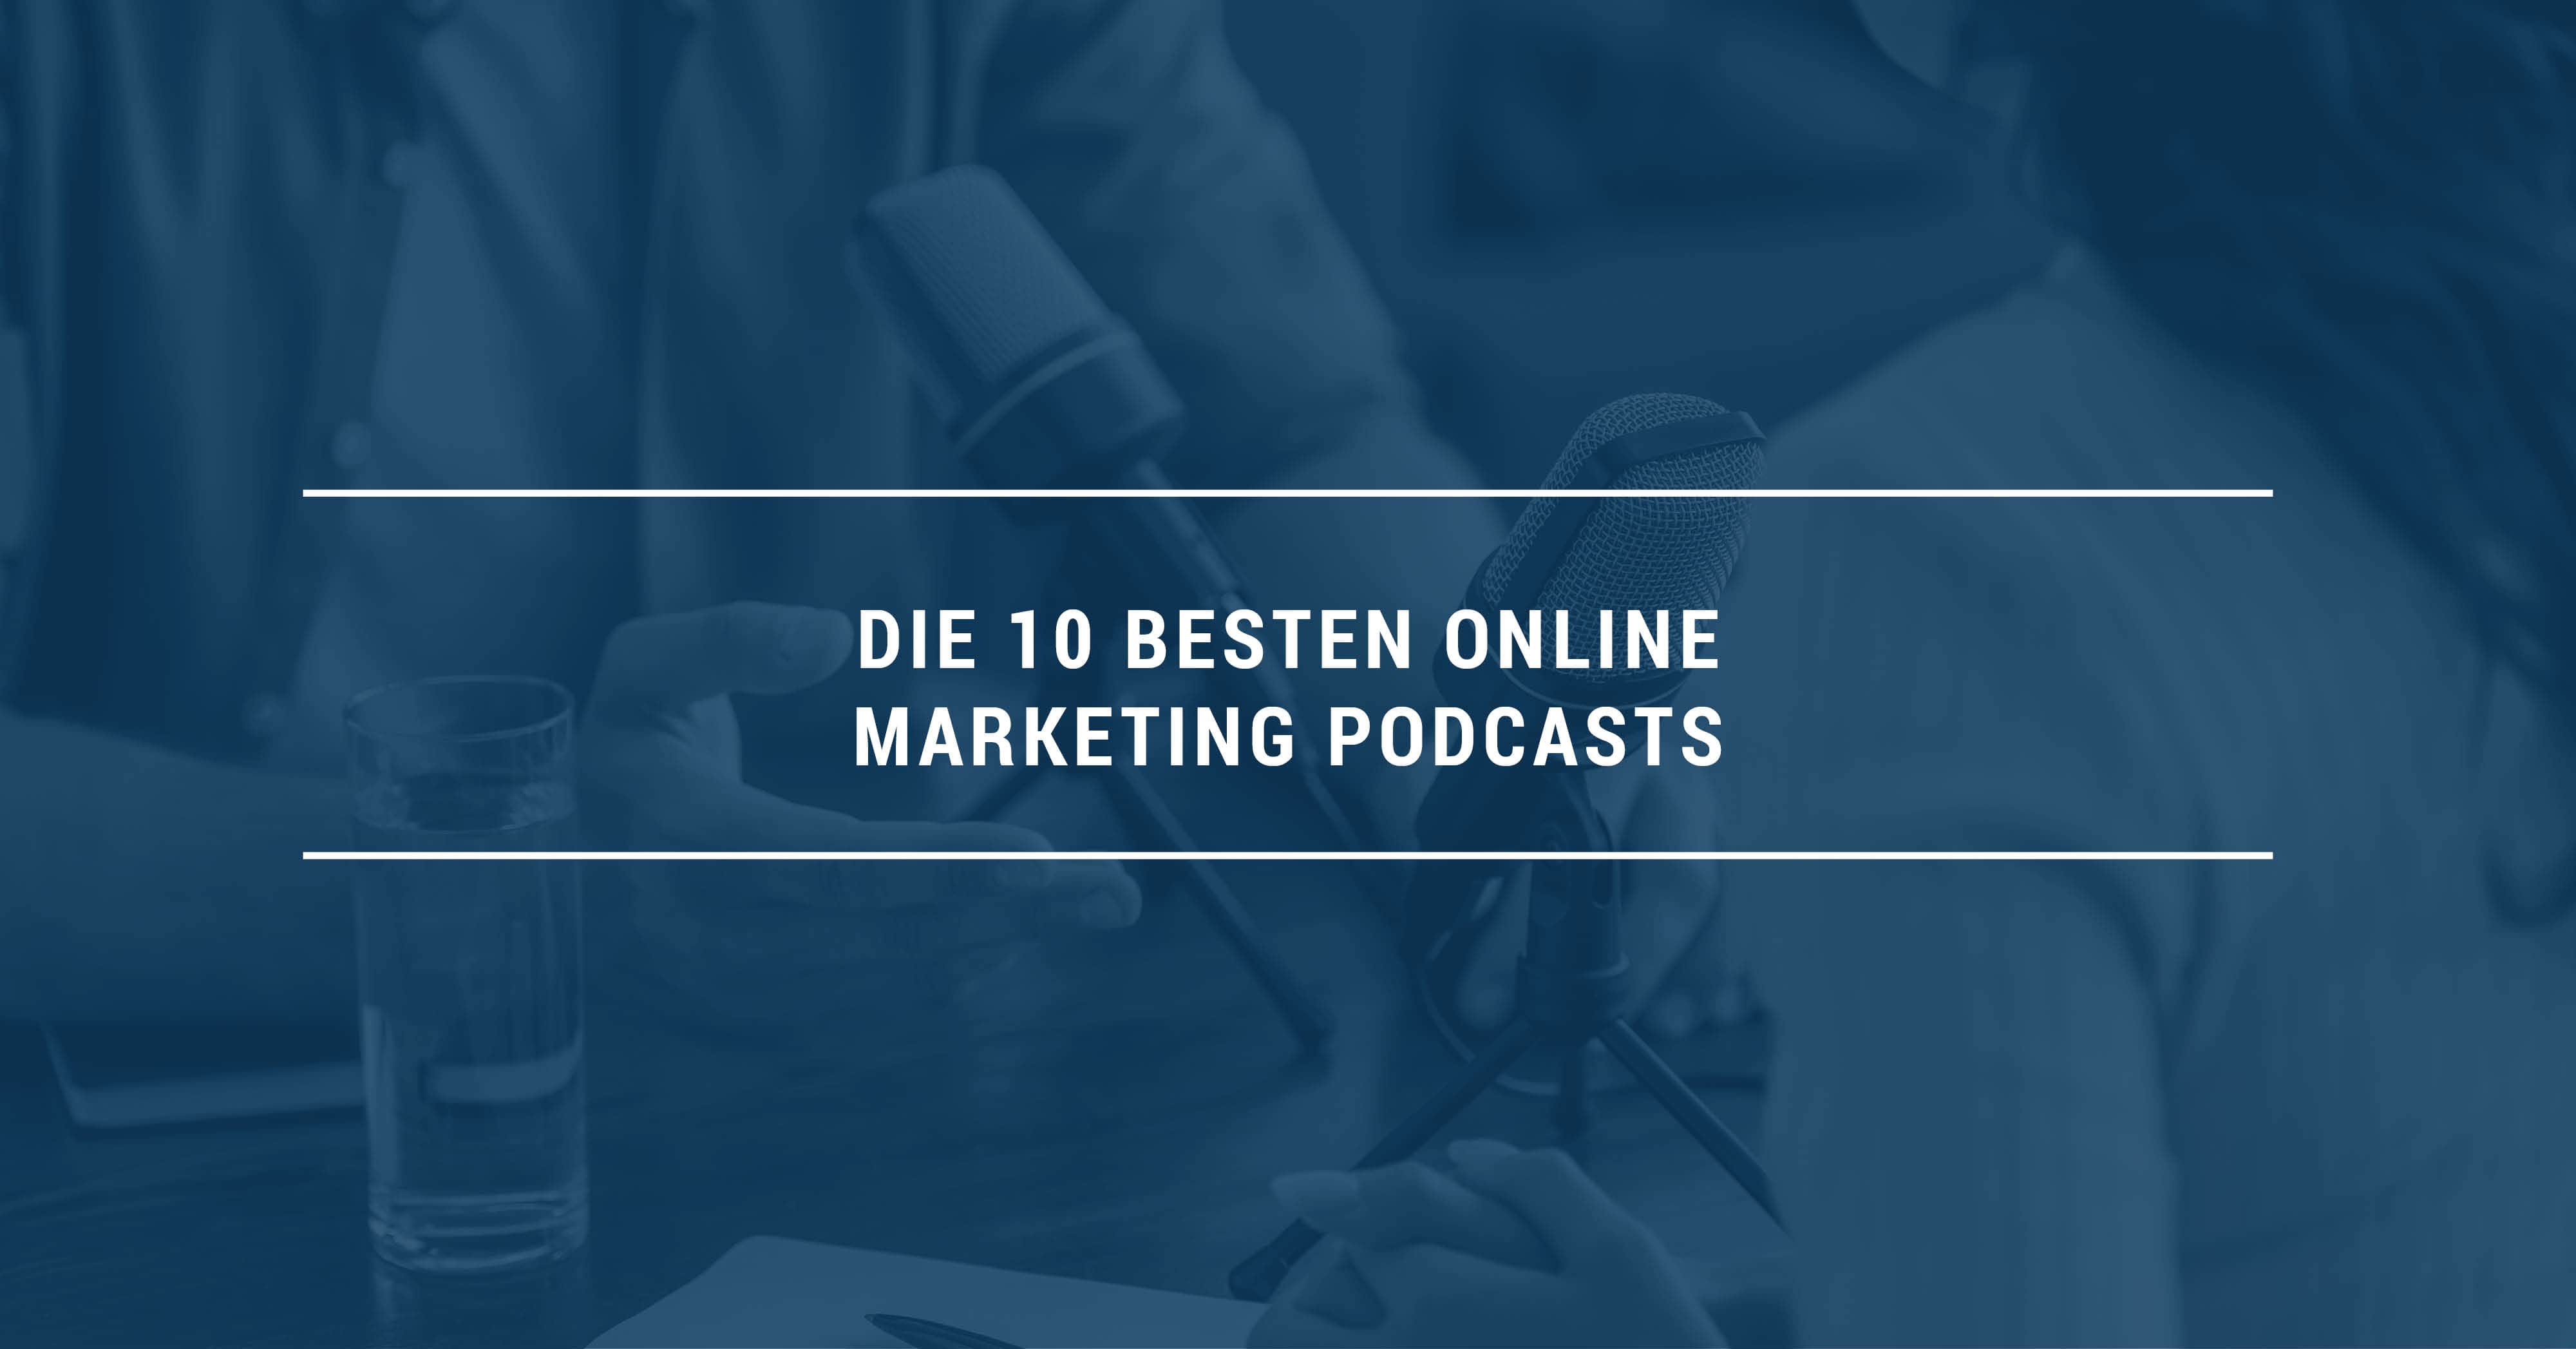 Die 10 besten Online Marketing Podcasts 2021